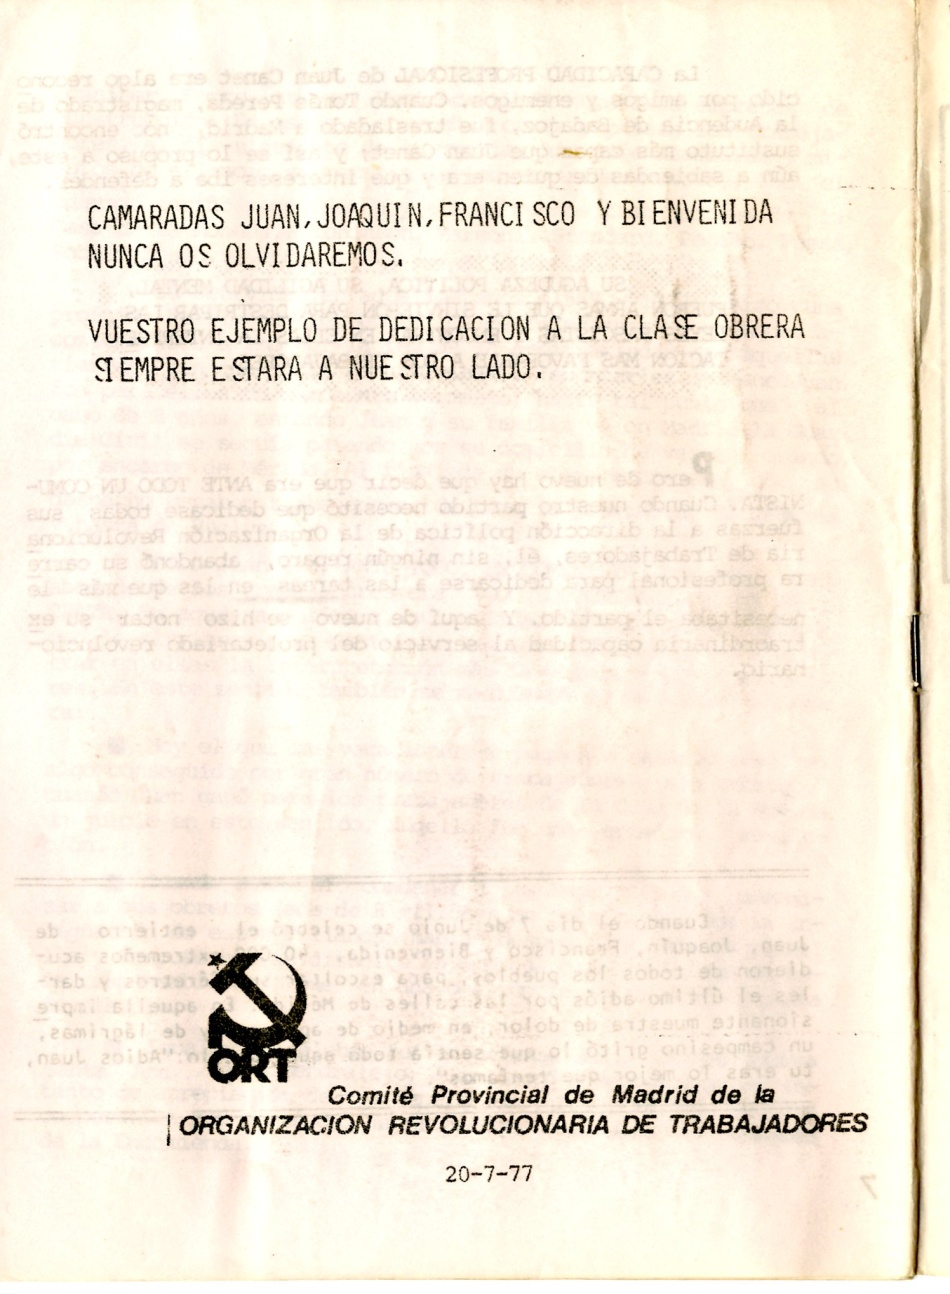 Juan Canet kolat, abogado. Secretario General de Madrid ORT. Miembro del CC de la ORT. Falleció en accidente de tráfico en tierras de Extremadura, cuando iba a participar en un mitin de la Candidatura de los Trabajadores en 1979
